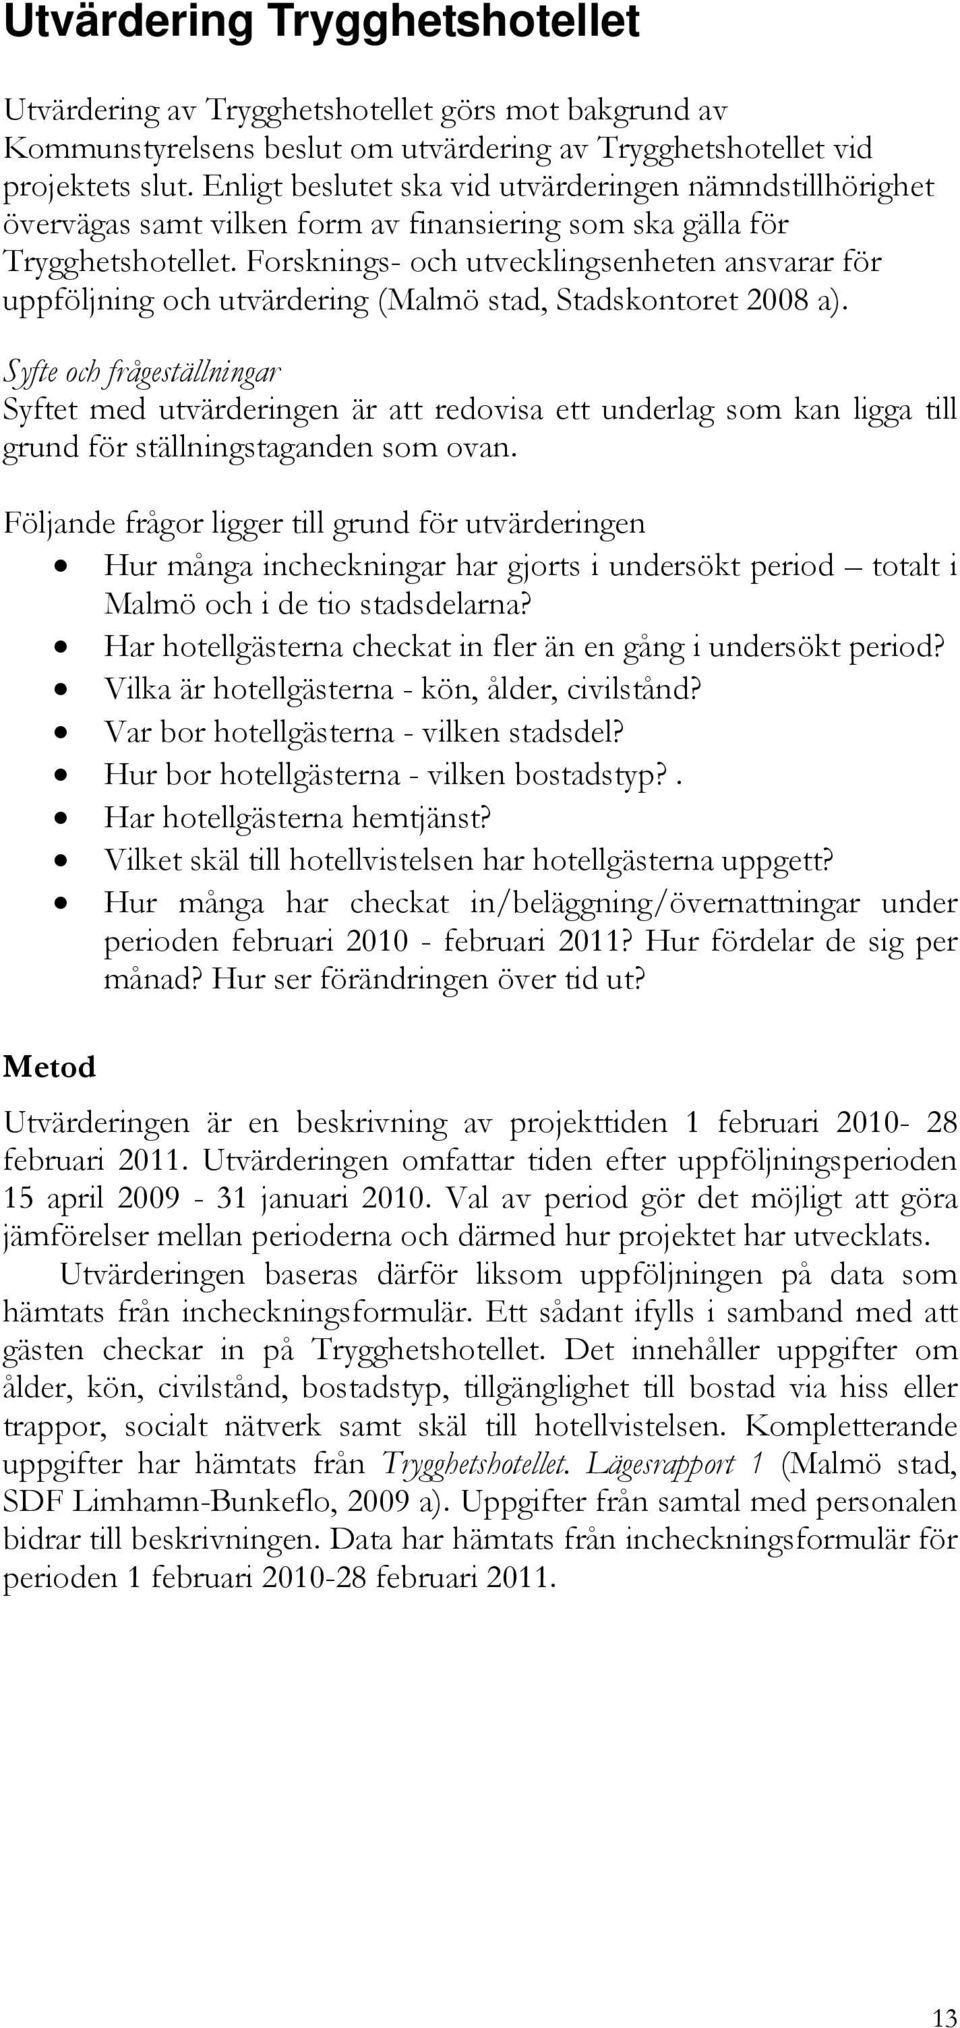 Forsknings- och utvecklingsenheten ansvarar för uppföljning och utvärdering (Malmö stad, Stadskontoret 2008 a).